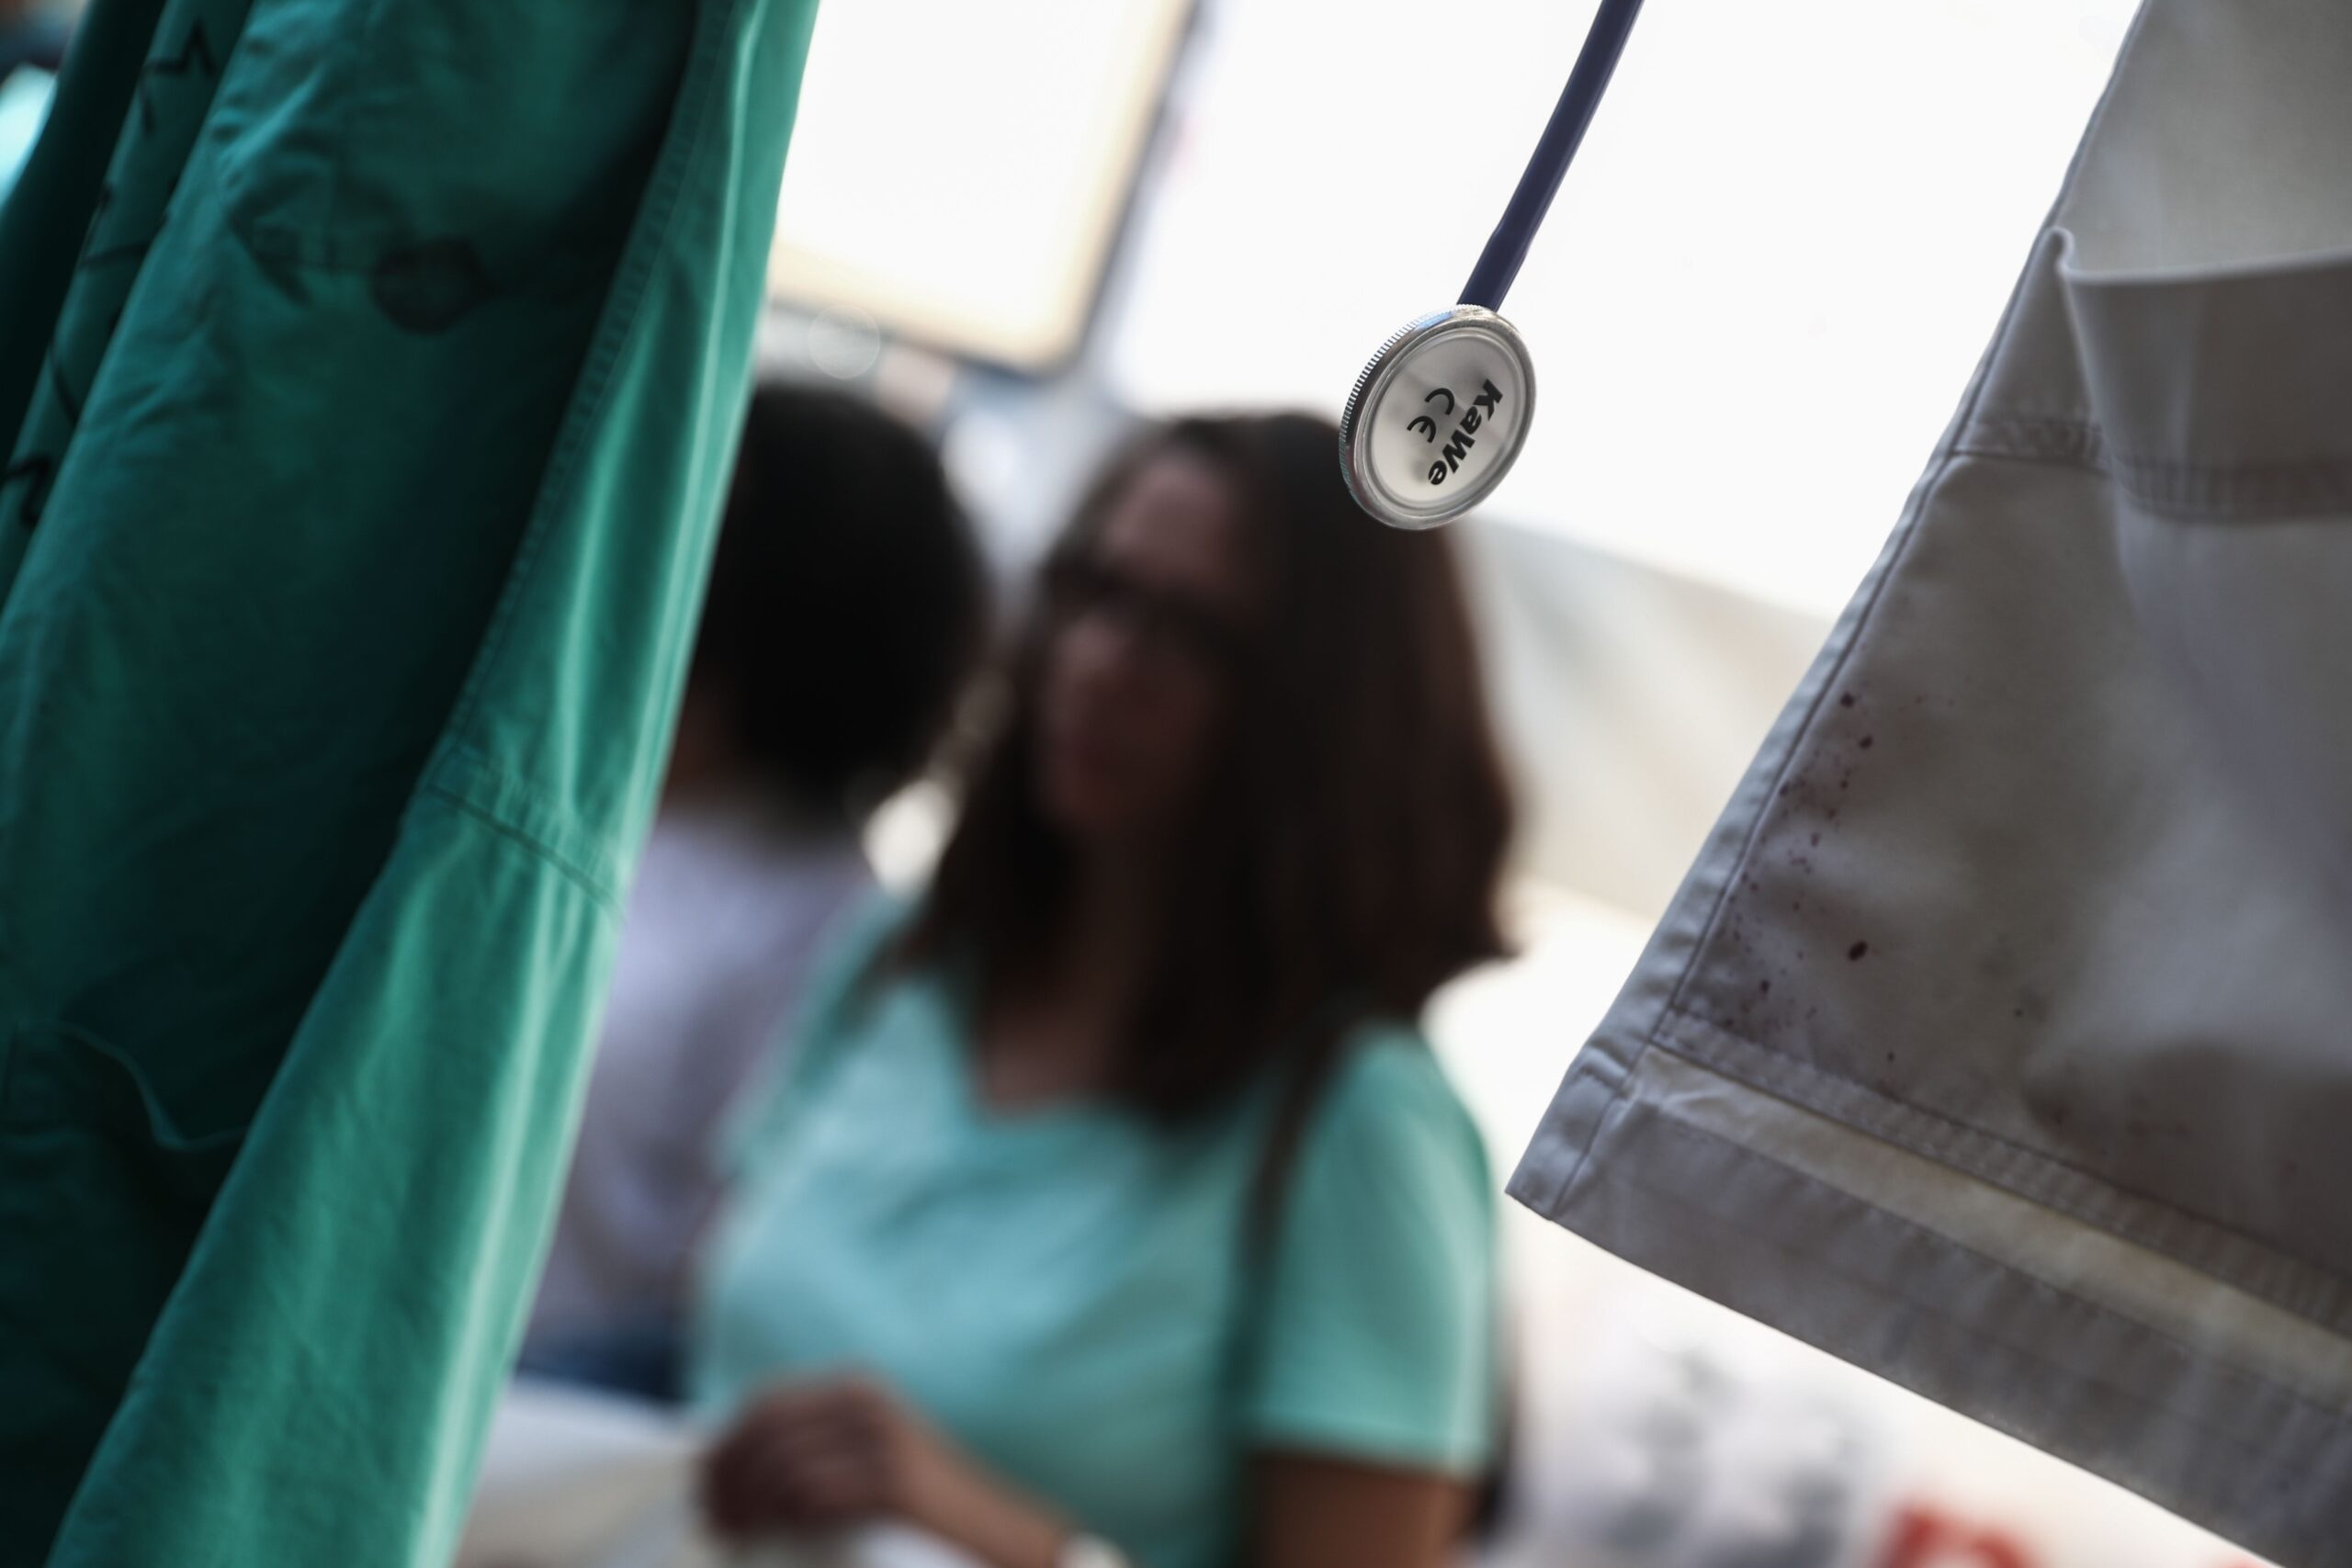 Ναύπλιο – Ι. Αθανασούλα, αντιπρ. νοσηλευτών: «Ζούμε κάθε μέρα με τον φόβο, κάνουμε τον σταυρό μας»